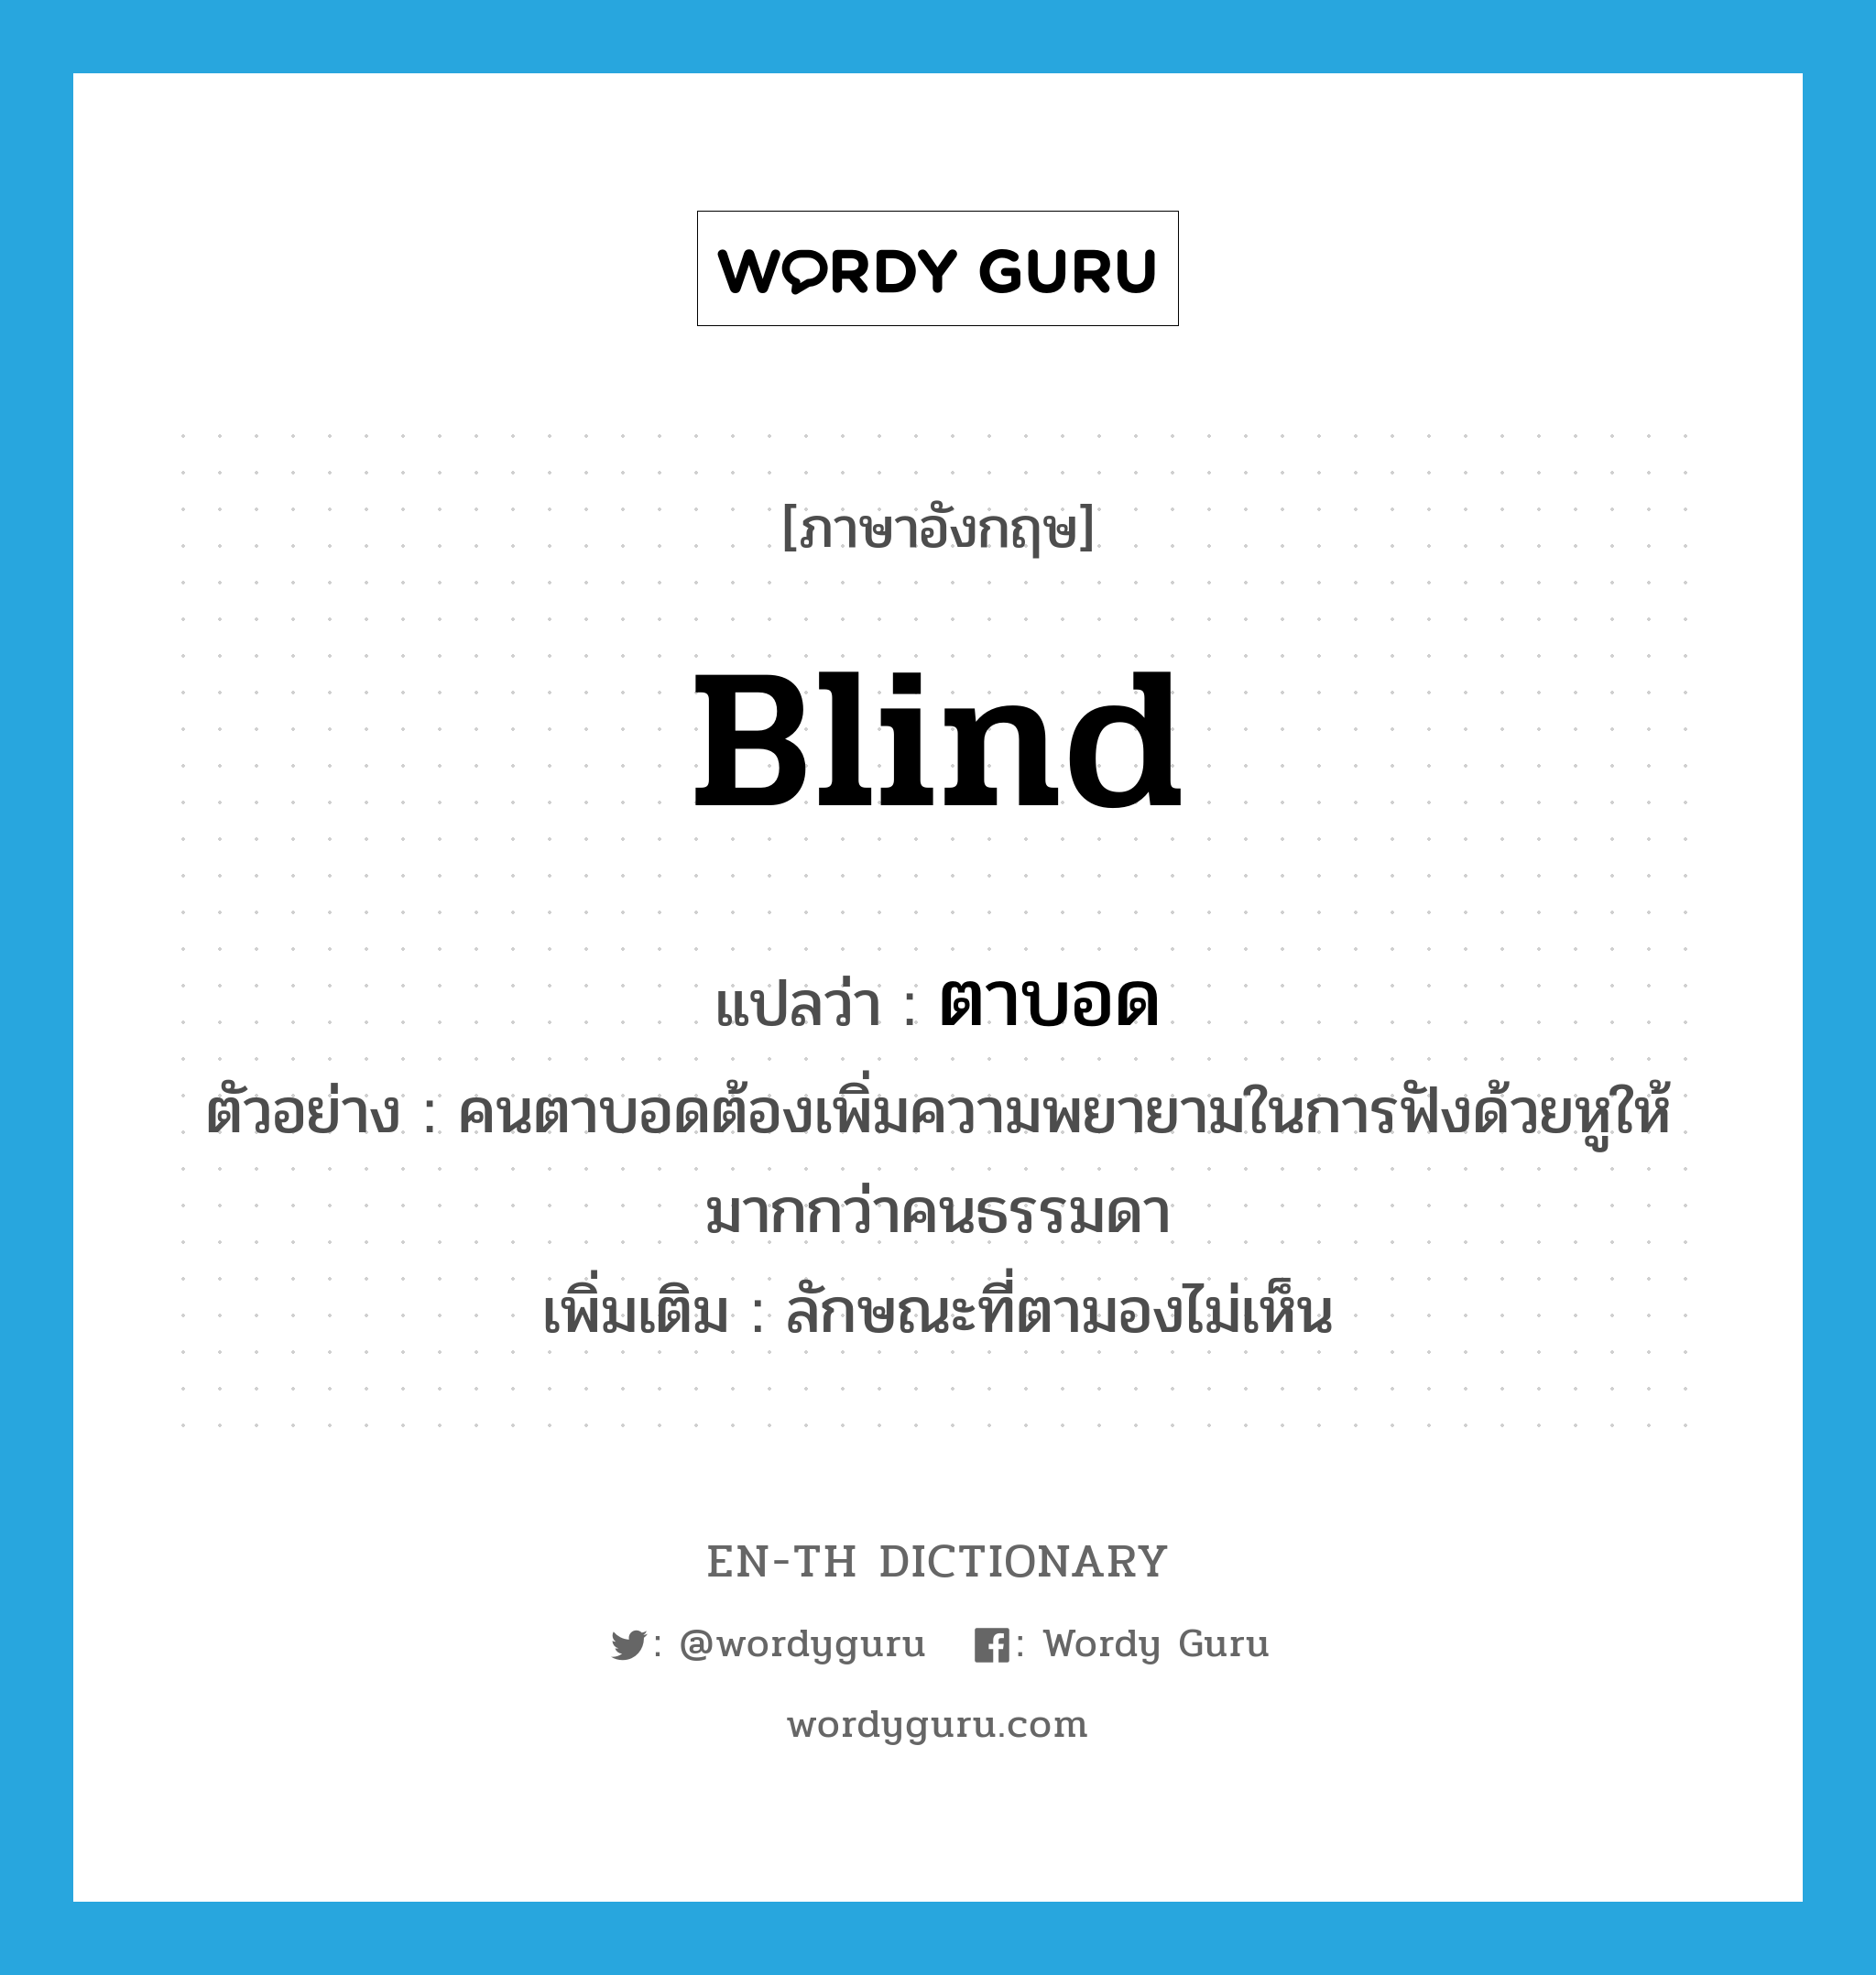 ตาบอด ภาษาอังกฤษ?, คำศัพท์ภาษาอังกฤษ ตาบอด แปลว่า blind ประเภท ADJ ตัวอย่าง คนตาบอดต้องเพิ่มความพยายามในการฟังด้วยหูให้มากกว่าคนธรรมดา เพิ่มเติม ลักษณะที่ตามองไม่เห็น หมวด ADJ